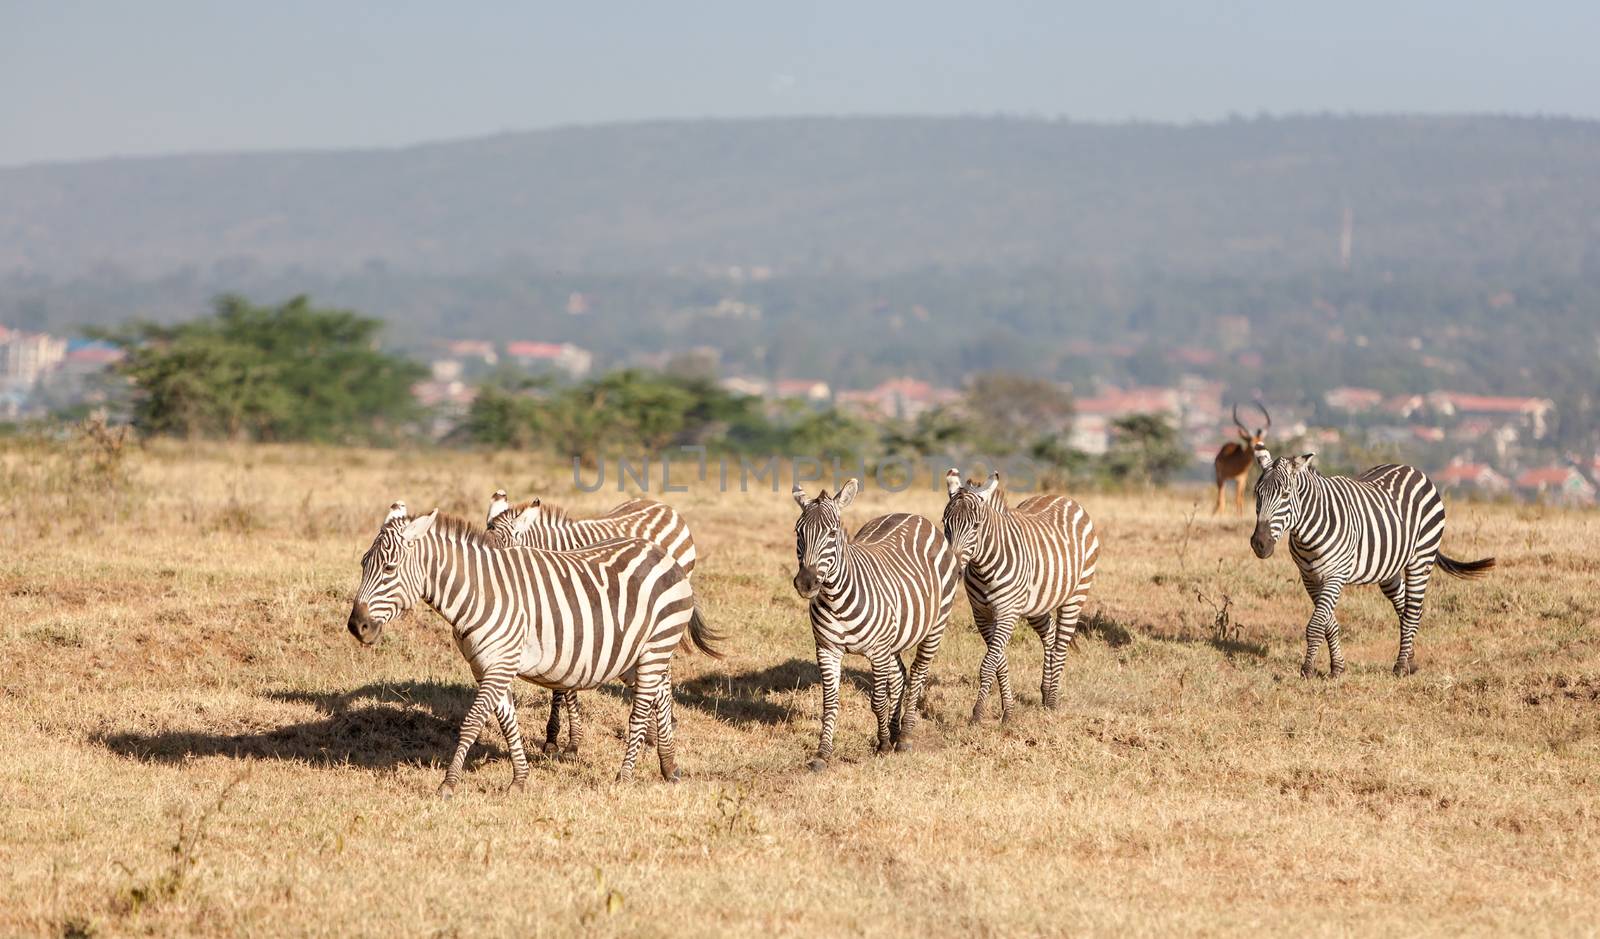 The zebras in the grasslands, Africa. Kenya